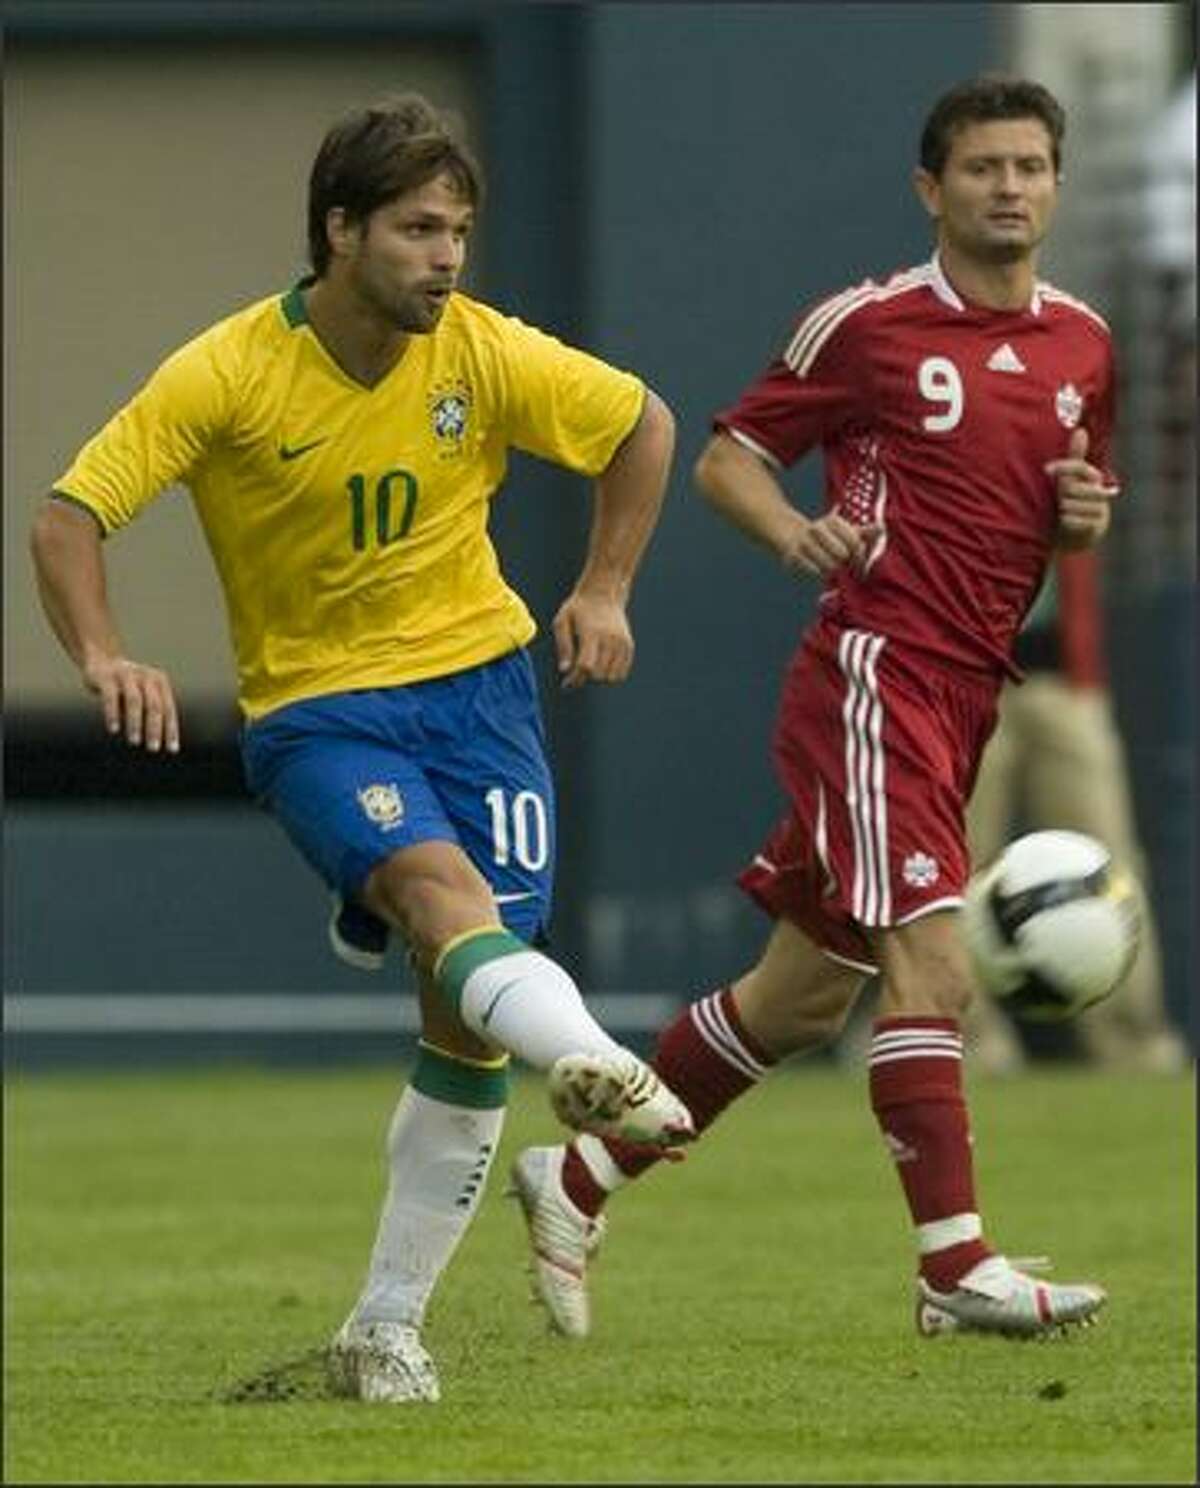 Brazil's Diego (10) fires the ball. Canada's Tomasz Radzinski (9) watches.